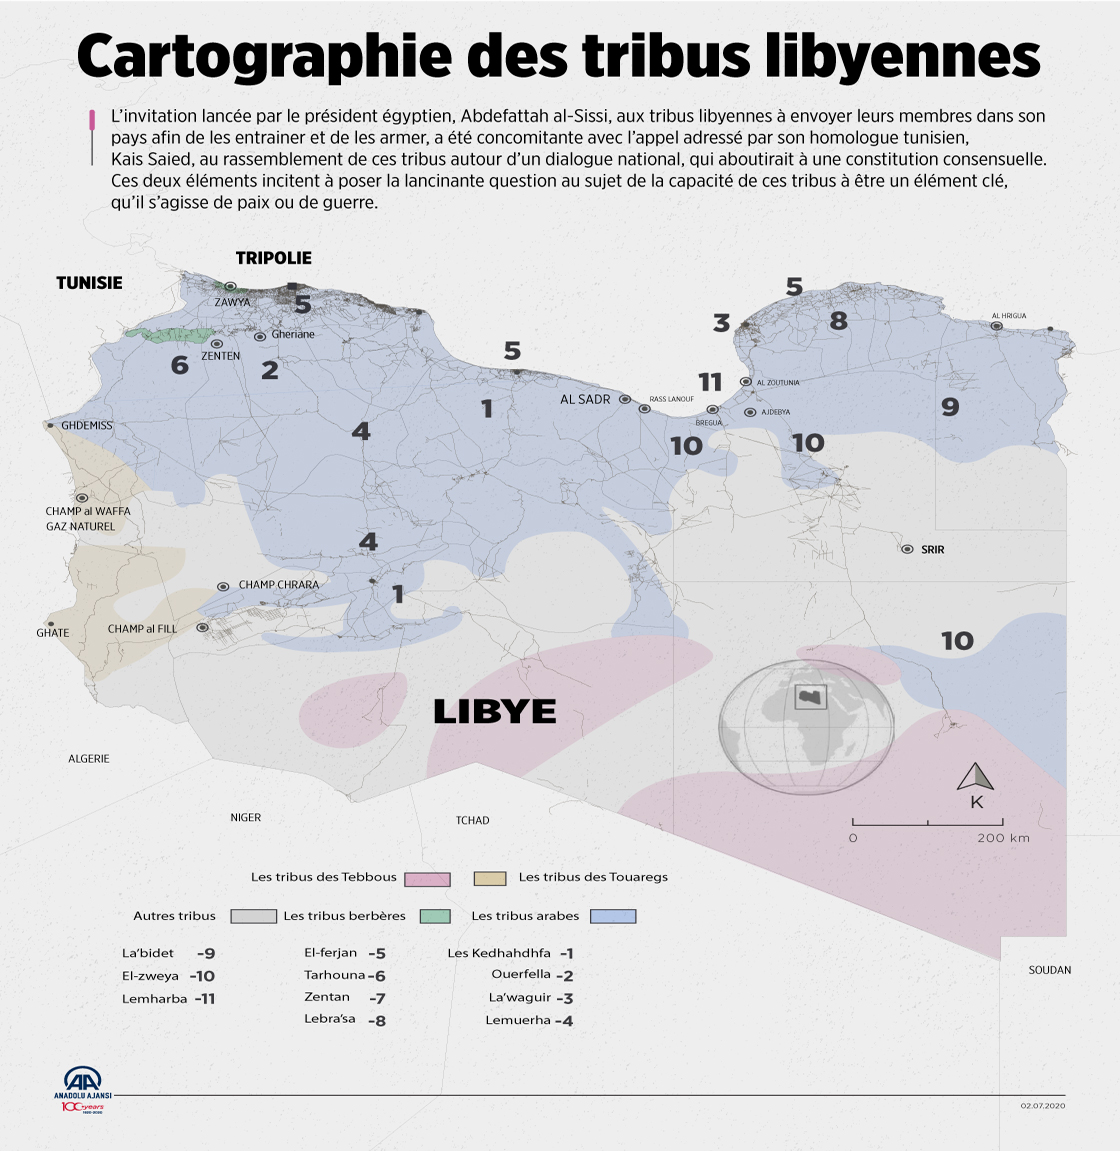 Cartographie des tribus libyennes